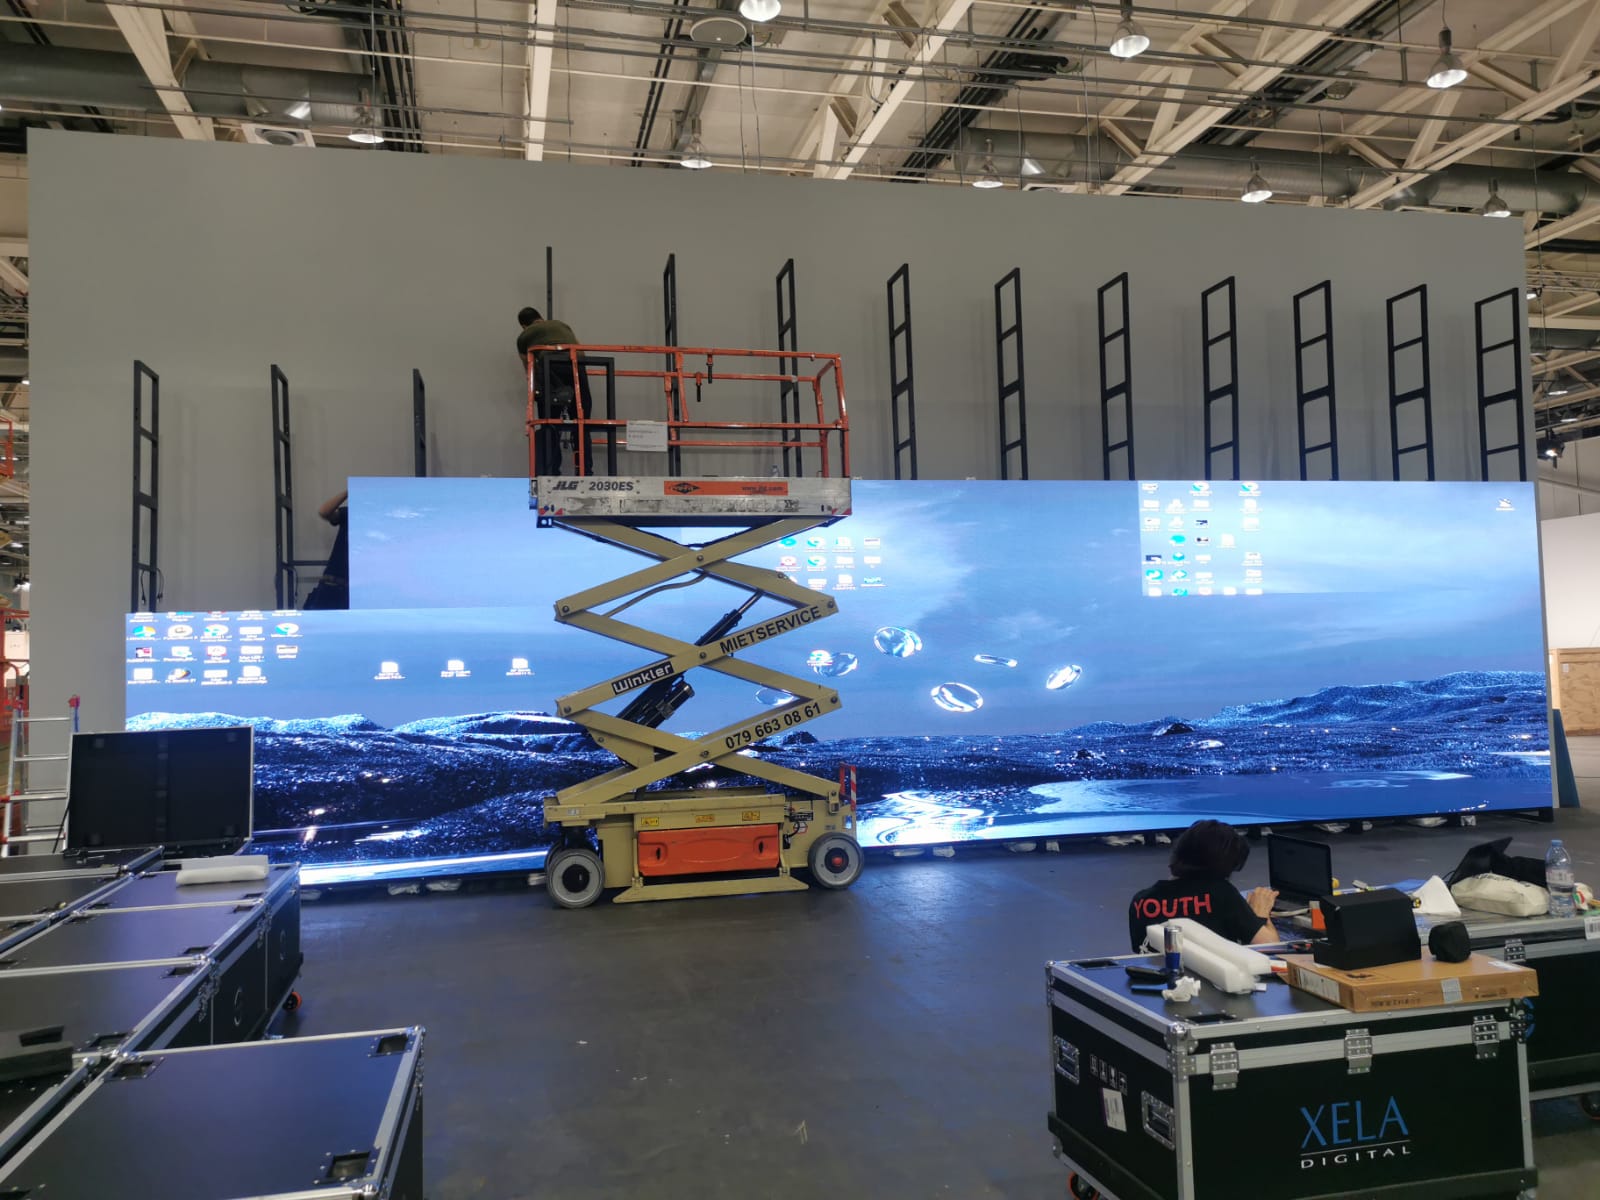 evenement xela digital installation ecran 60 m2